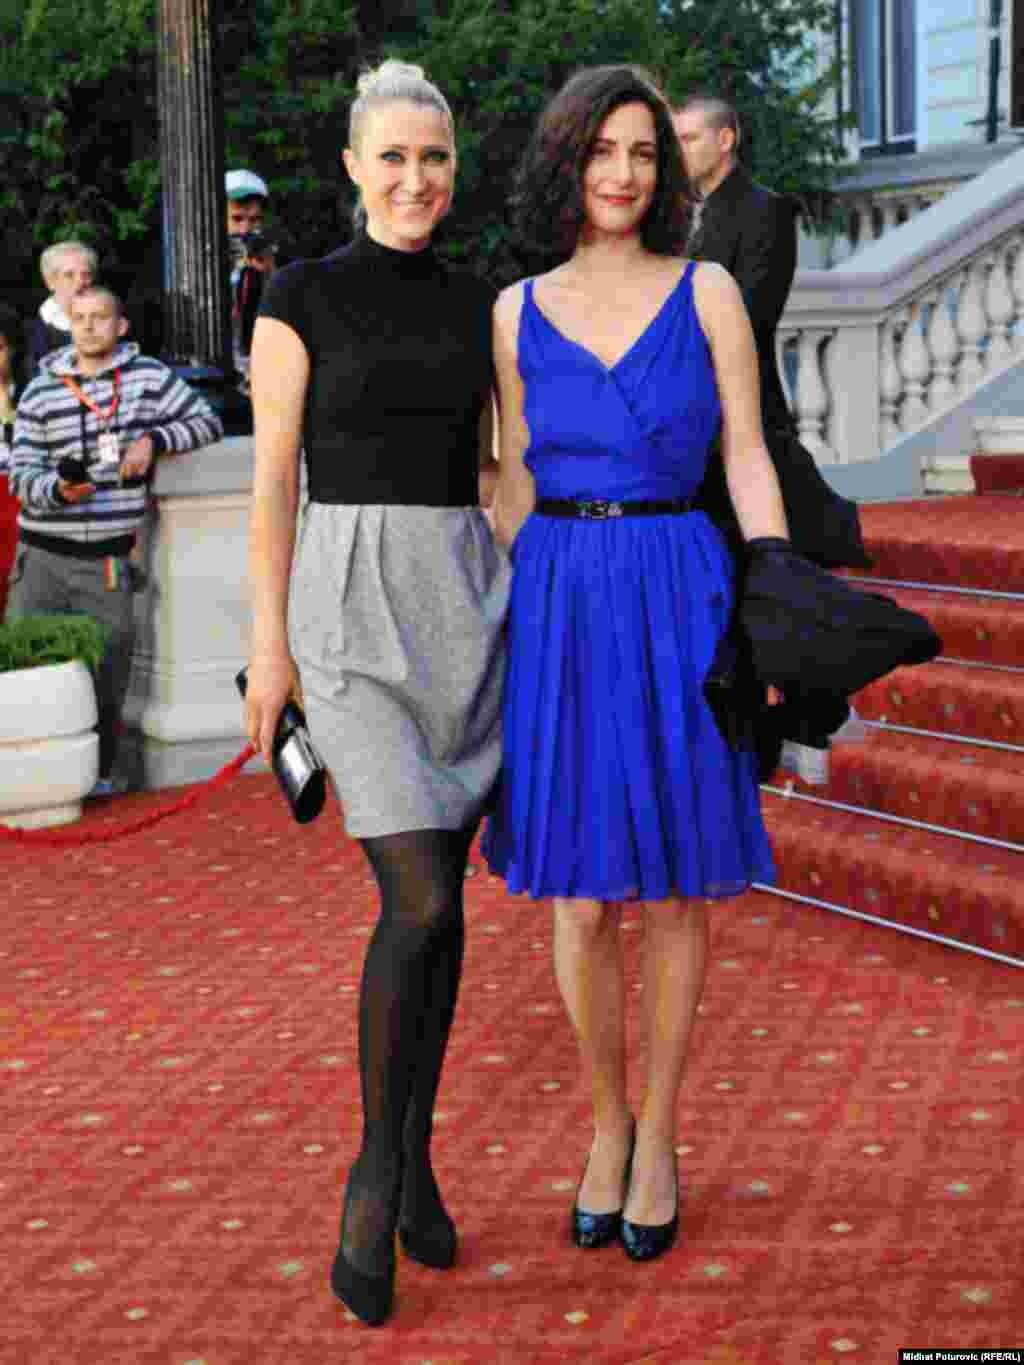 Mona Muratović - Zečević i Zana Marjanović, Sarajevo, 24.07.2011. Foto: RSE / Midhat Poturović 